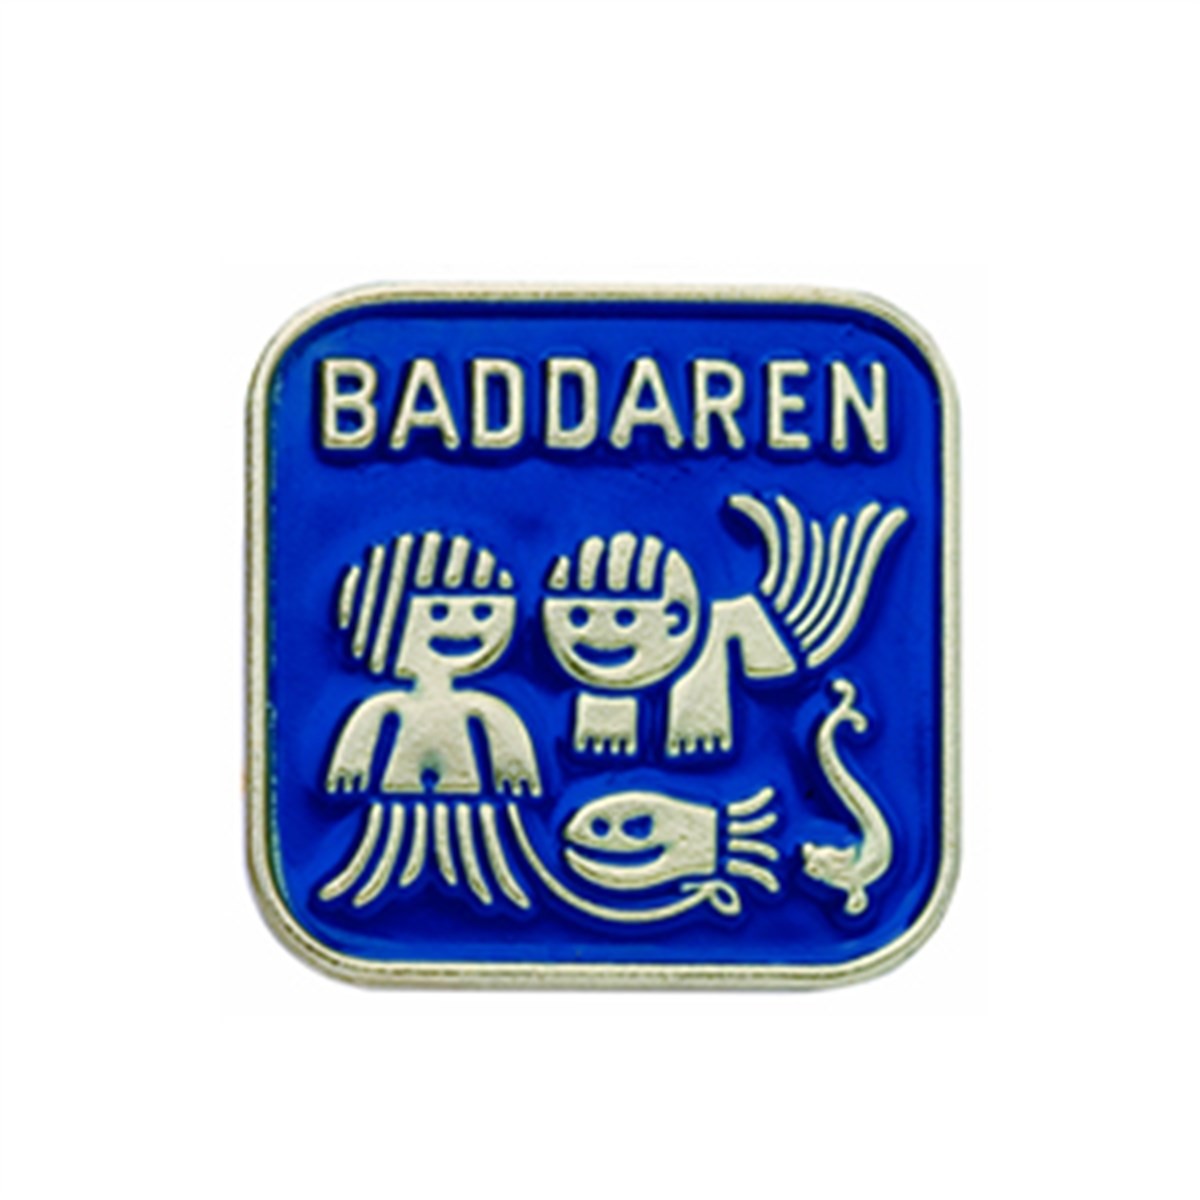 Baddaren - Nivå 1